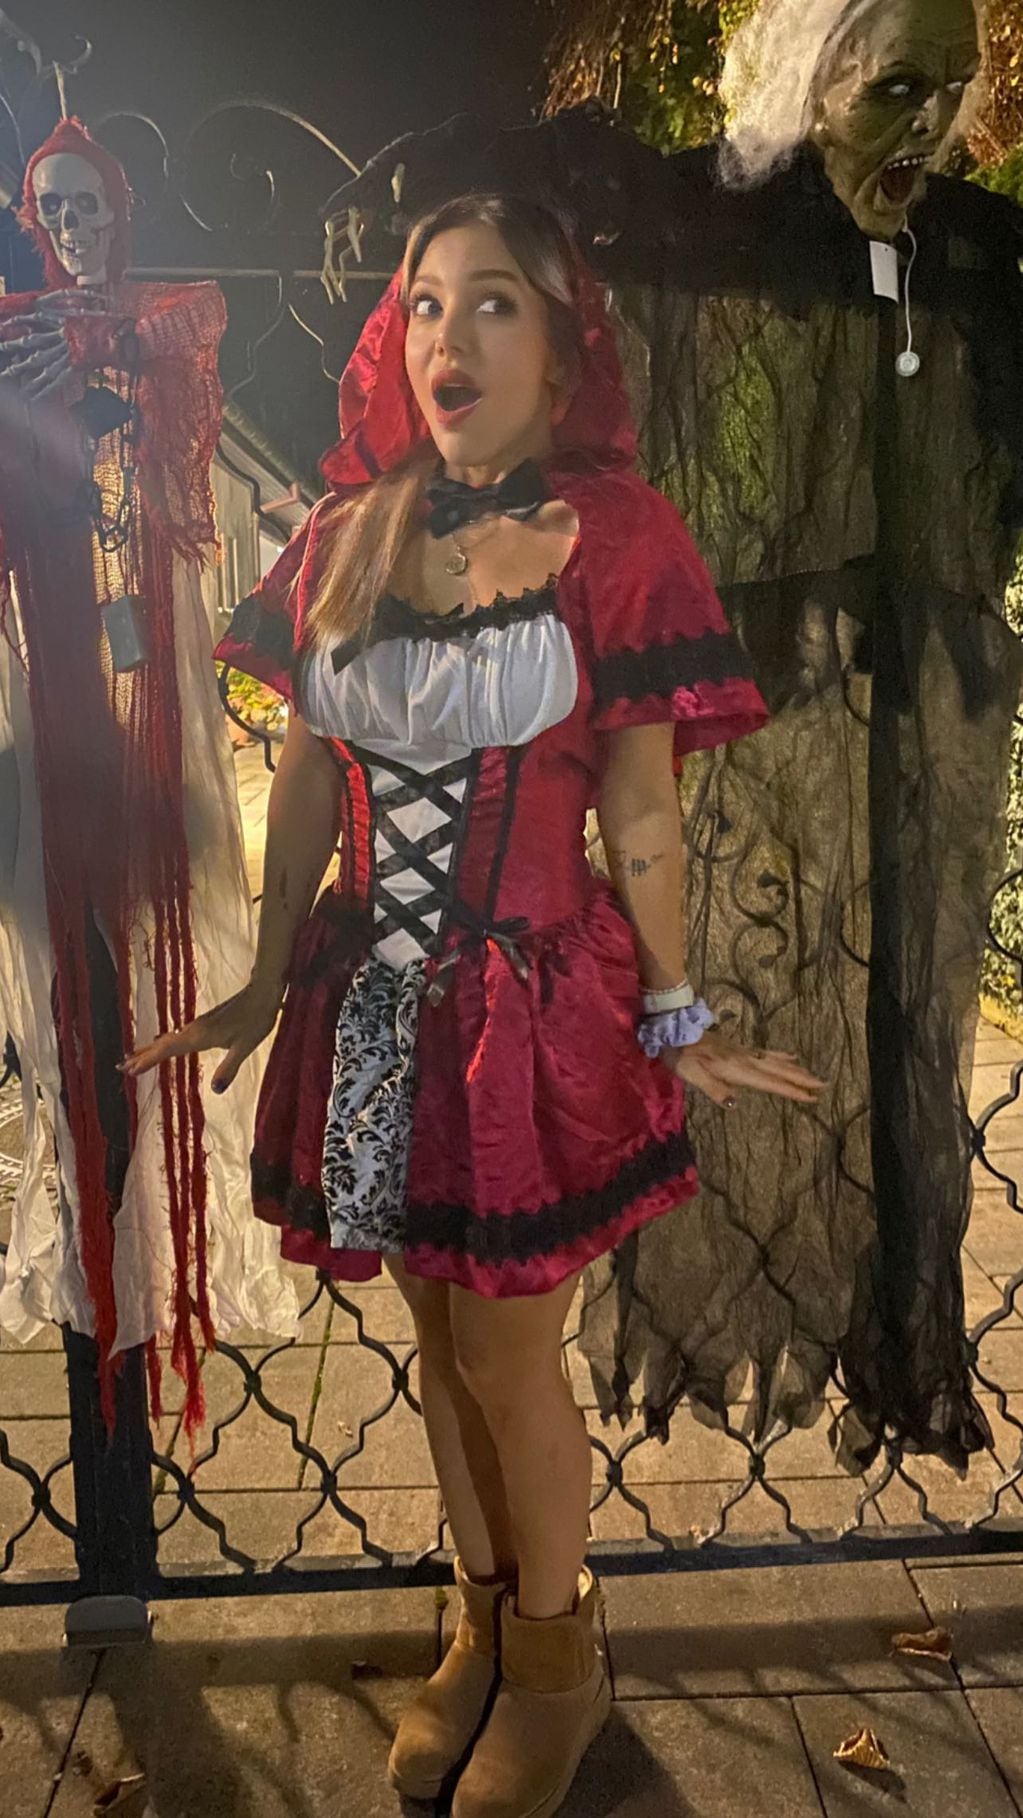 Estilo Caperucita Roja: el look de Evangelina Anderson para celebrar Halloween